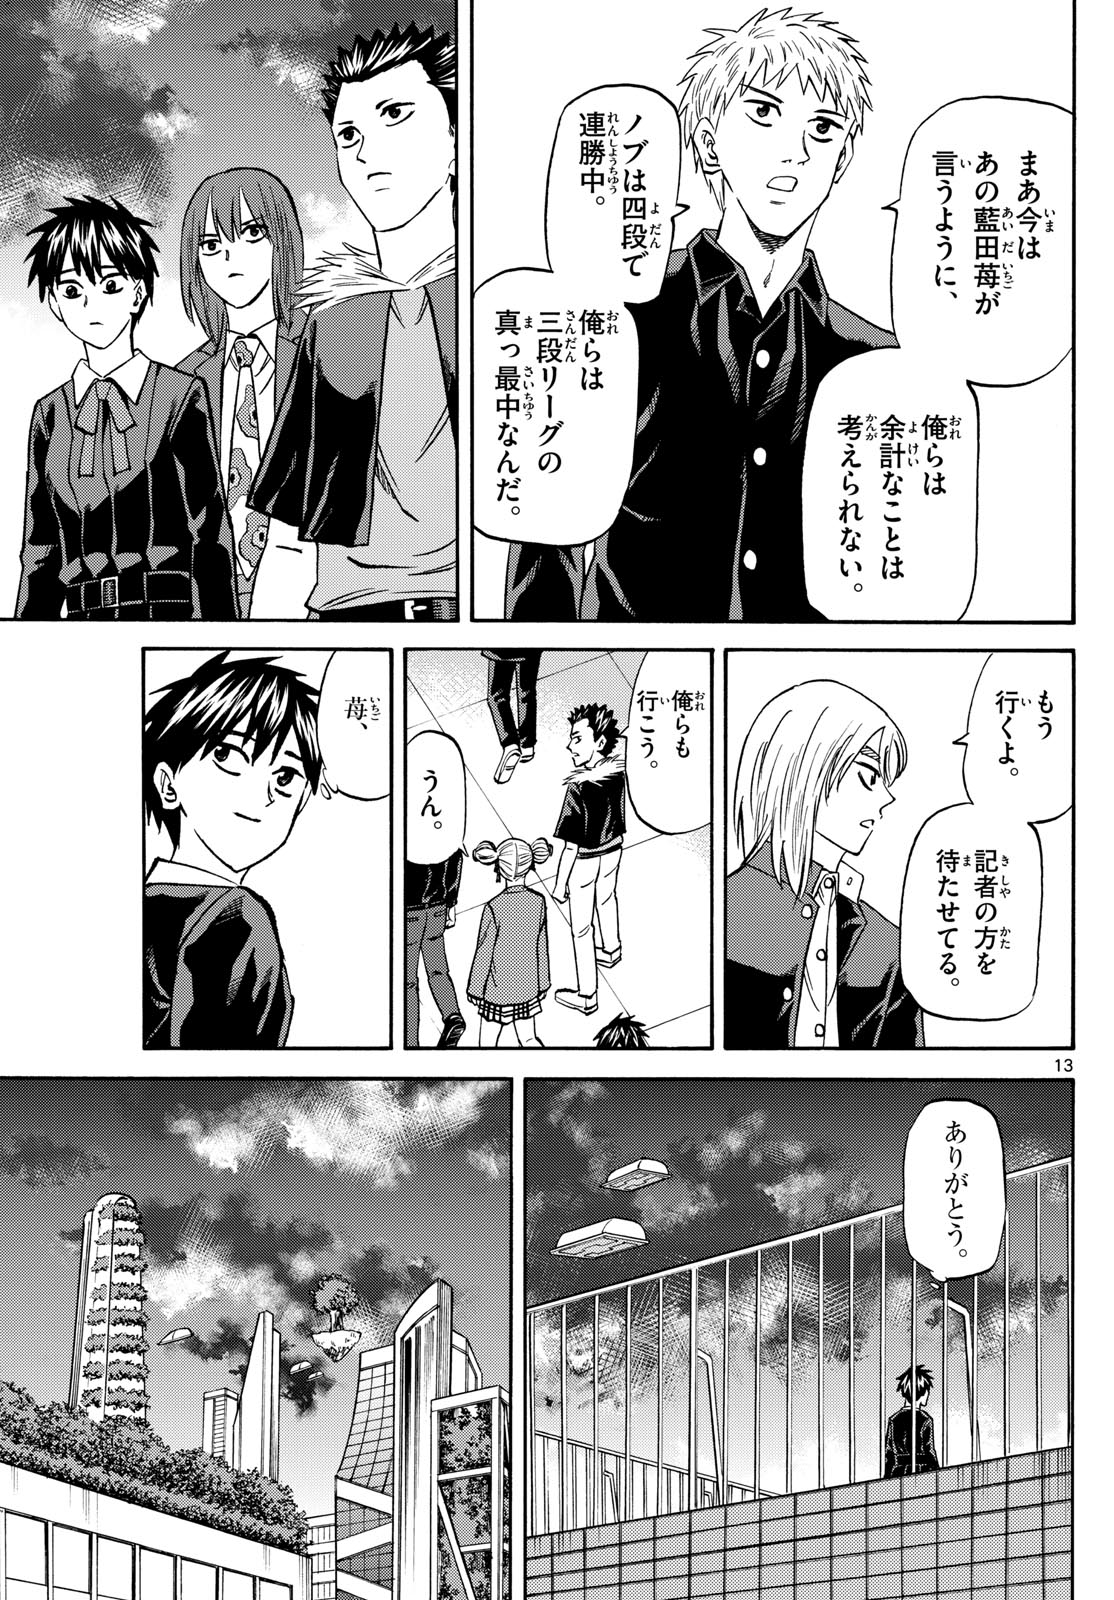 Tatsu to Ichigo - Chapter 188 - Page 13